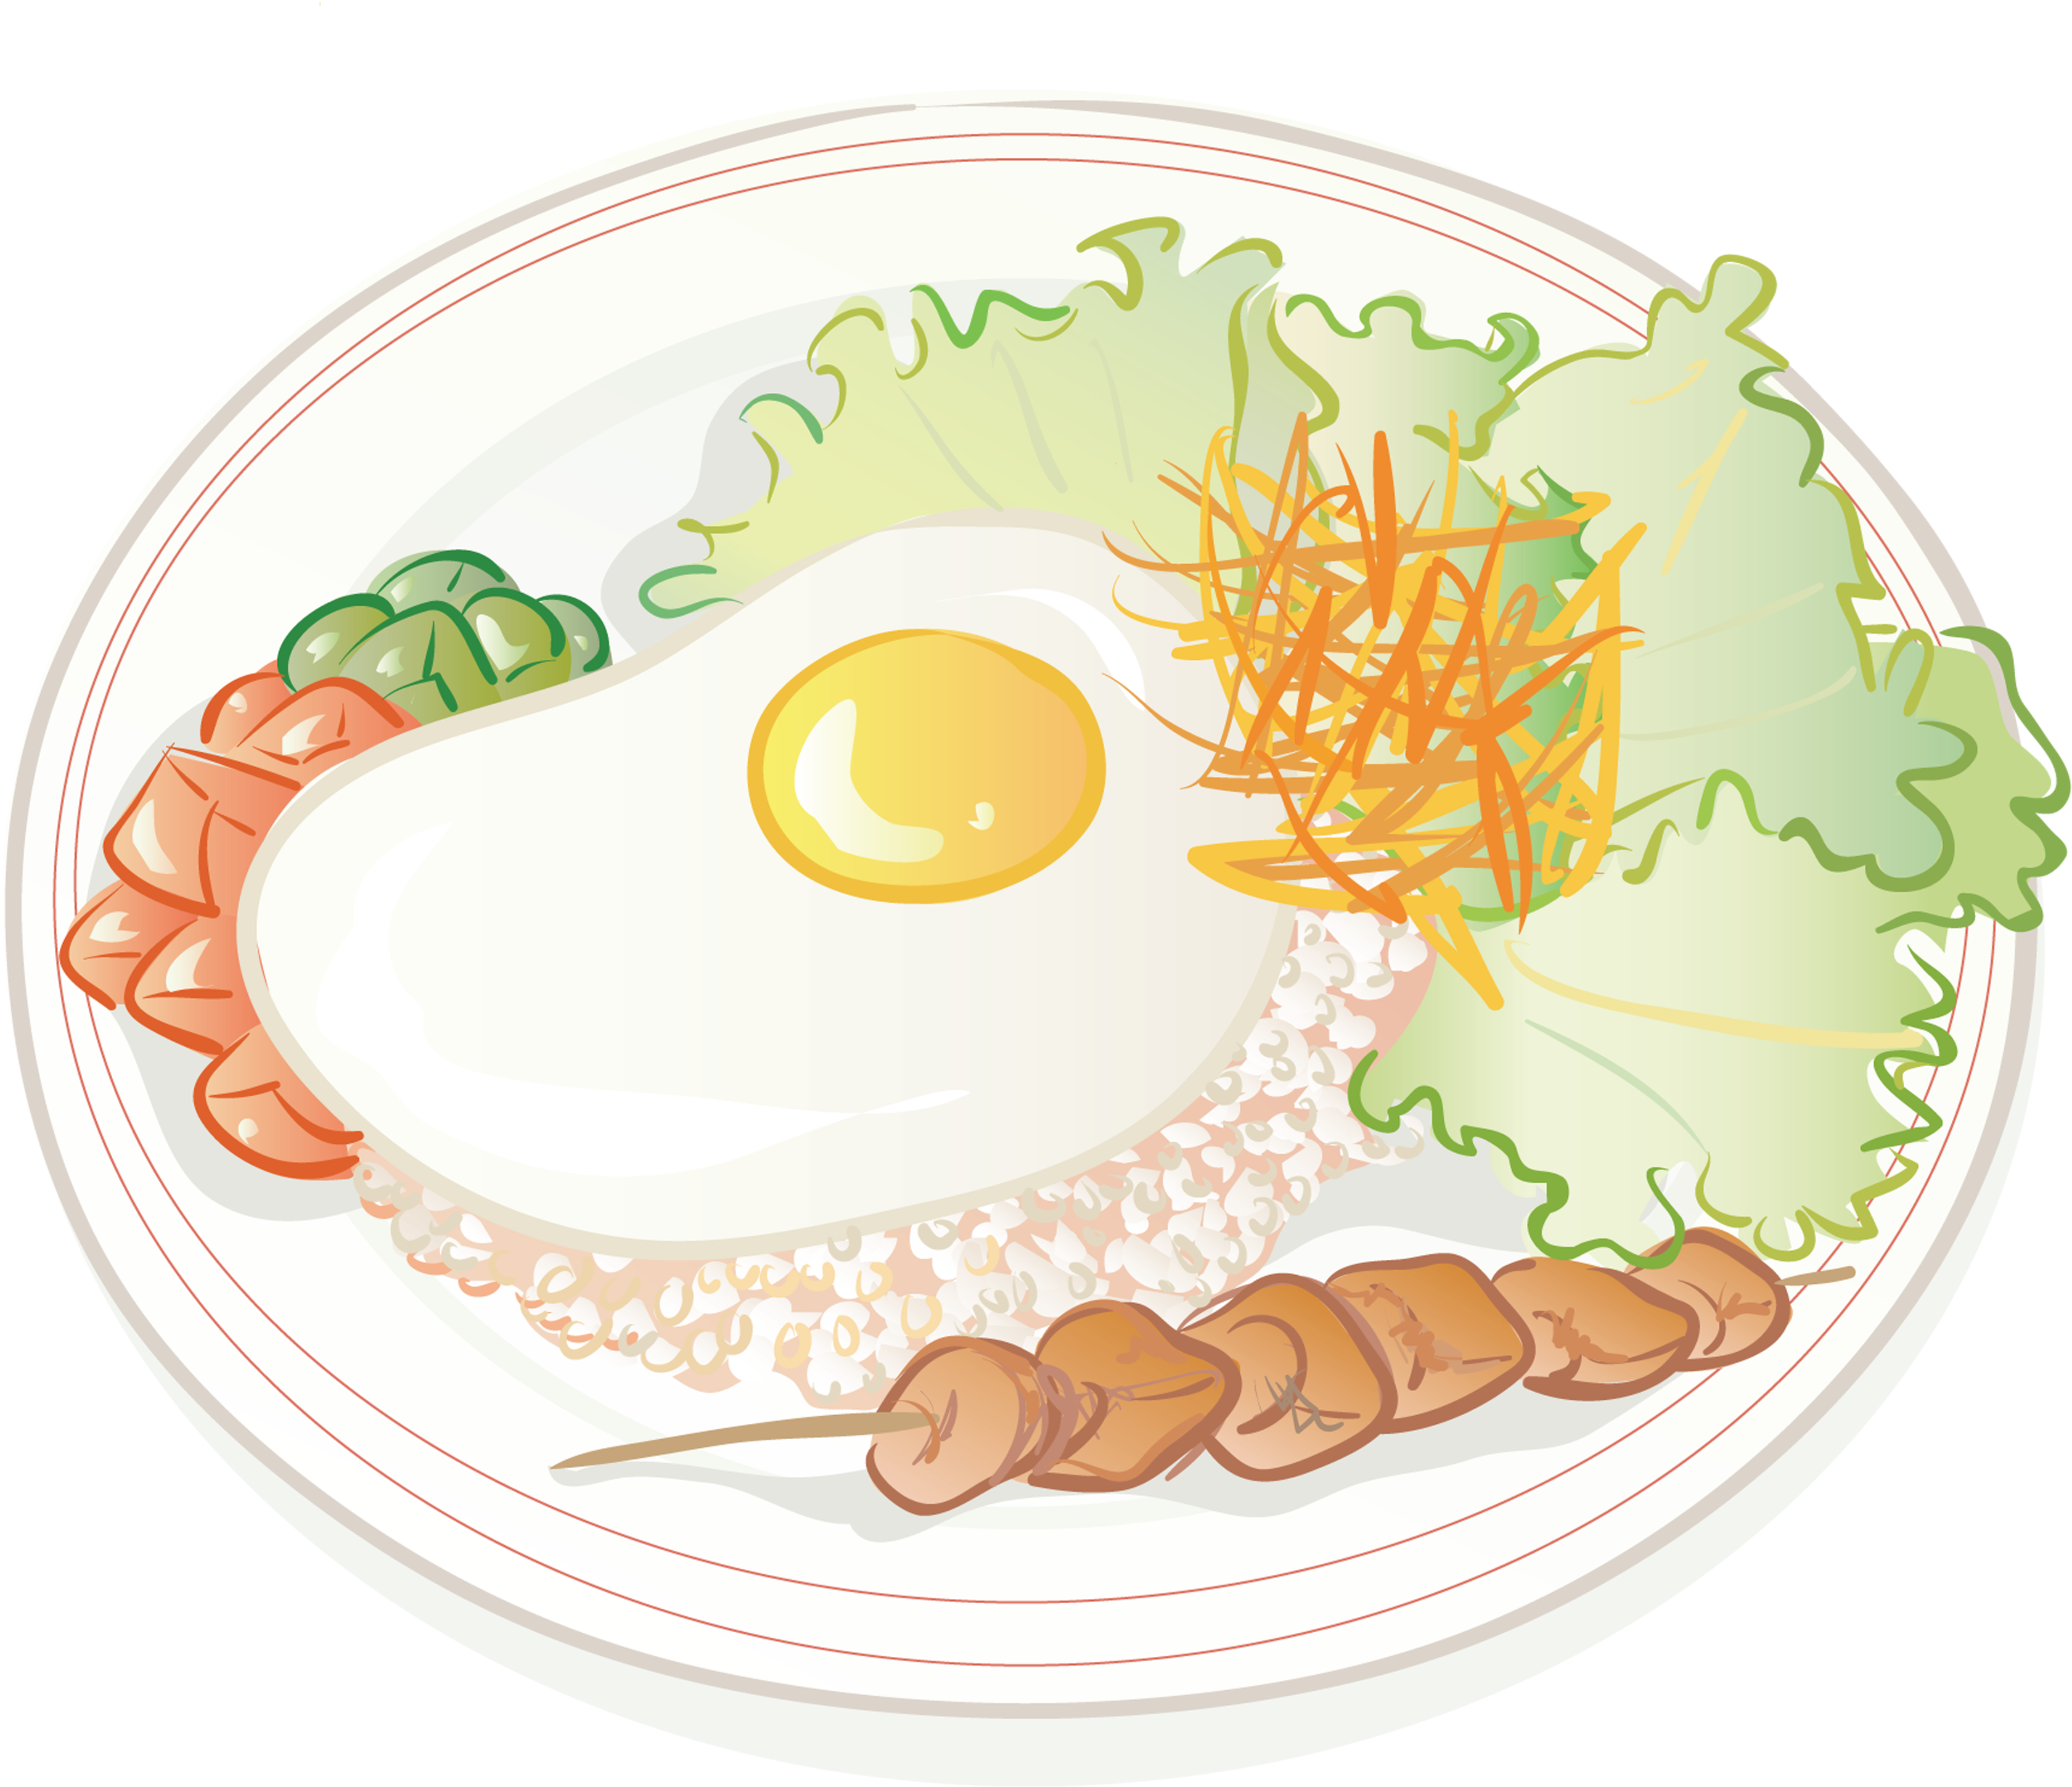 Sahanda yumurta ve kızarmış pilav çizgi filmi, Çin mutfağı, yemek